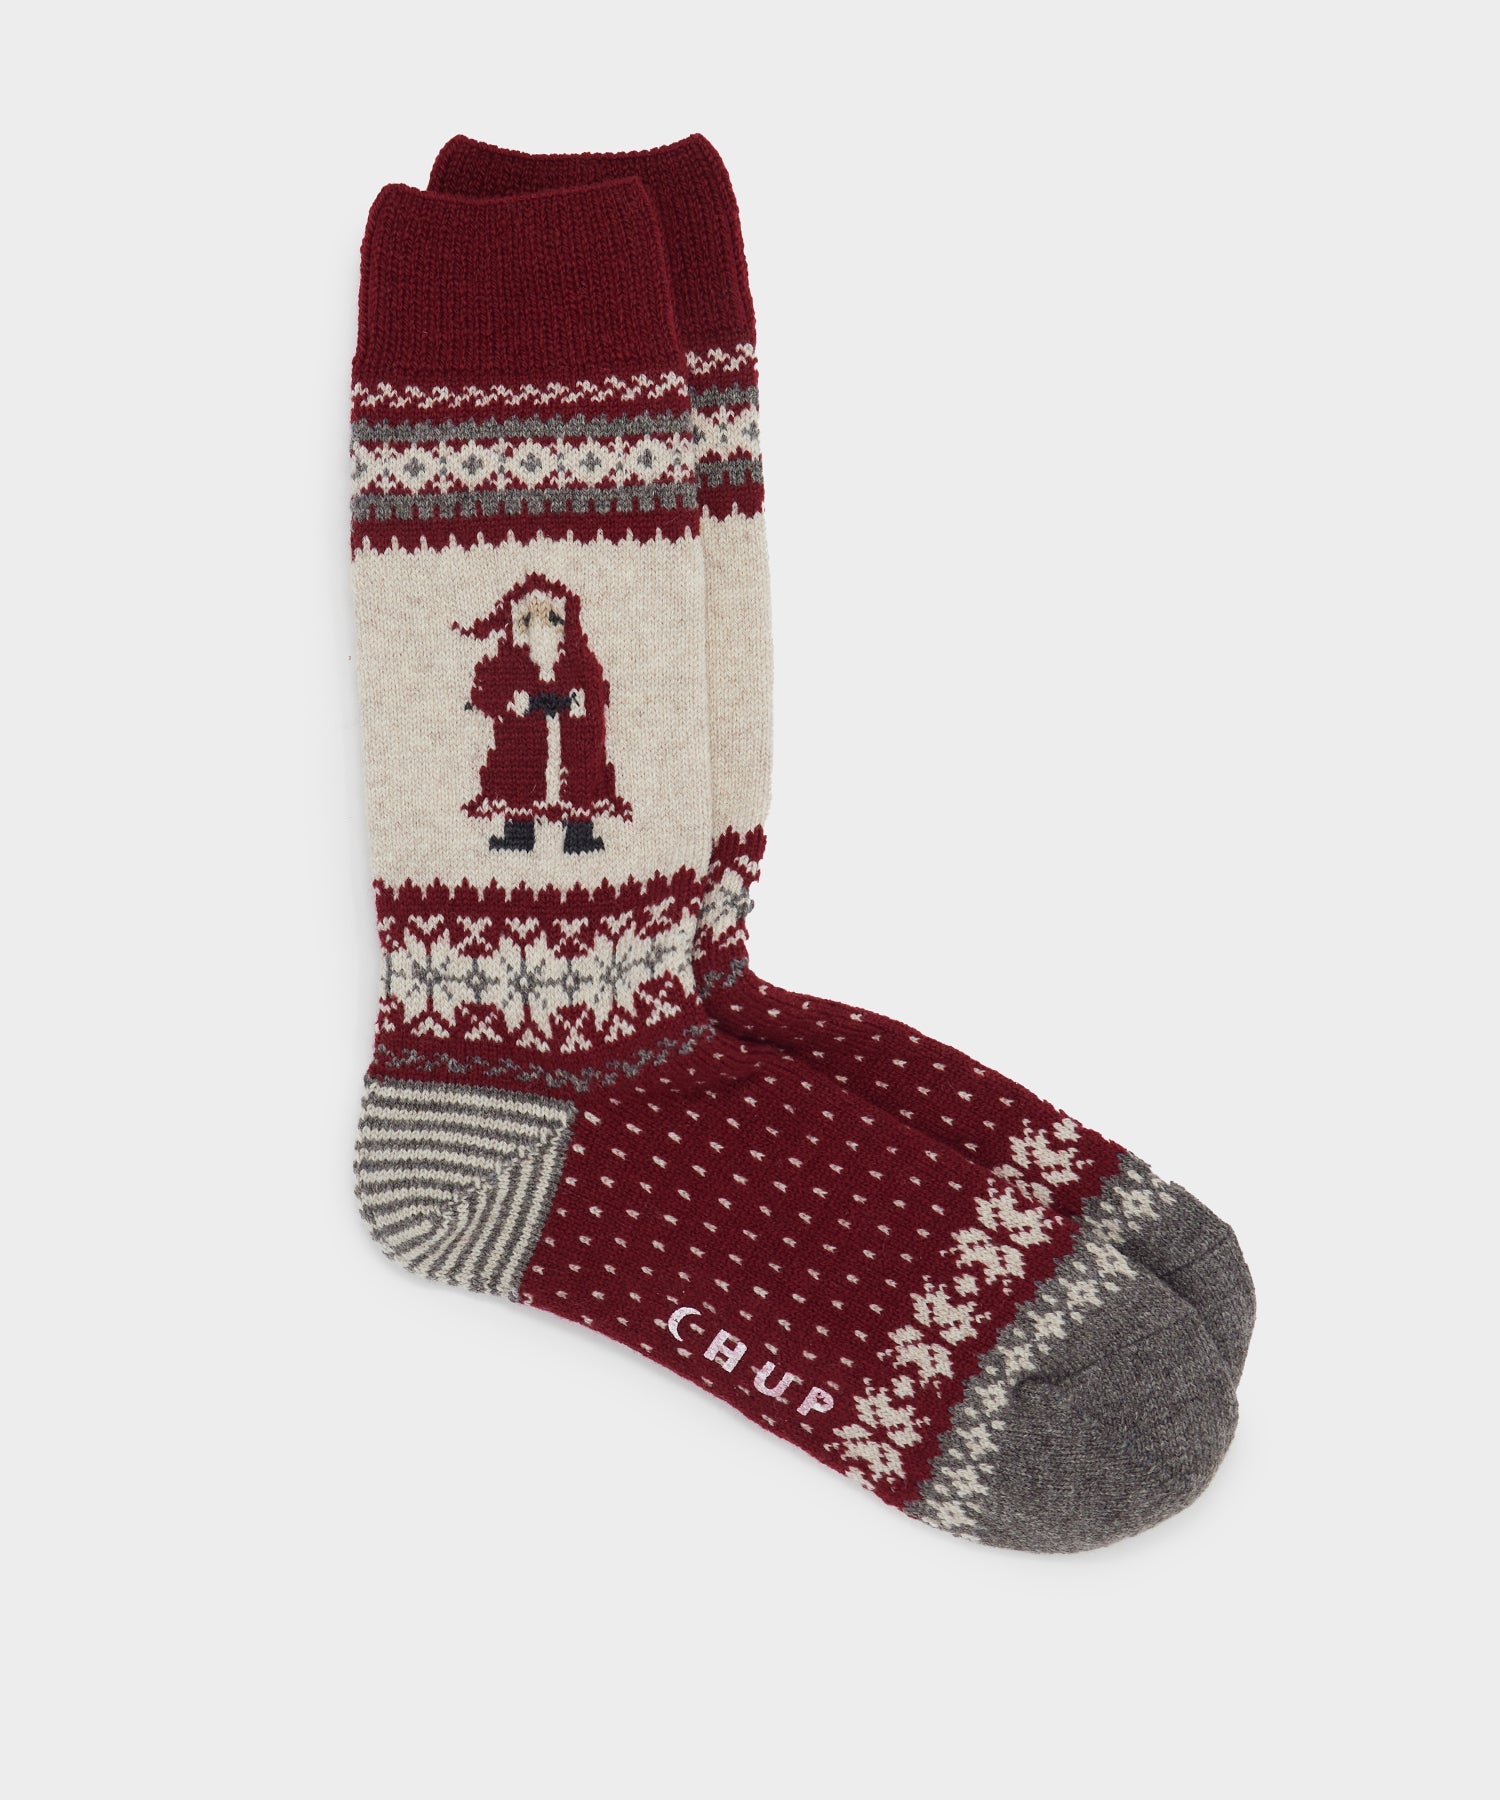 Chup Santa Wool Sock in Red